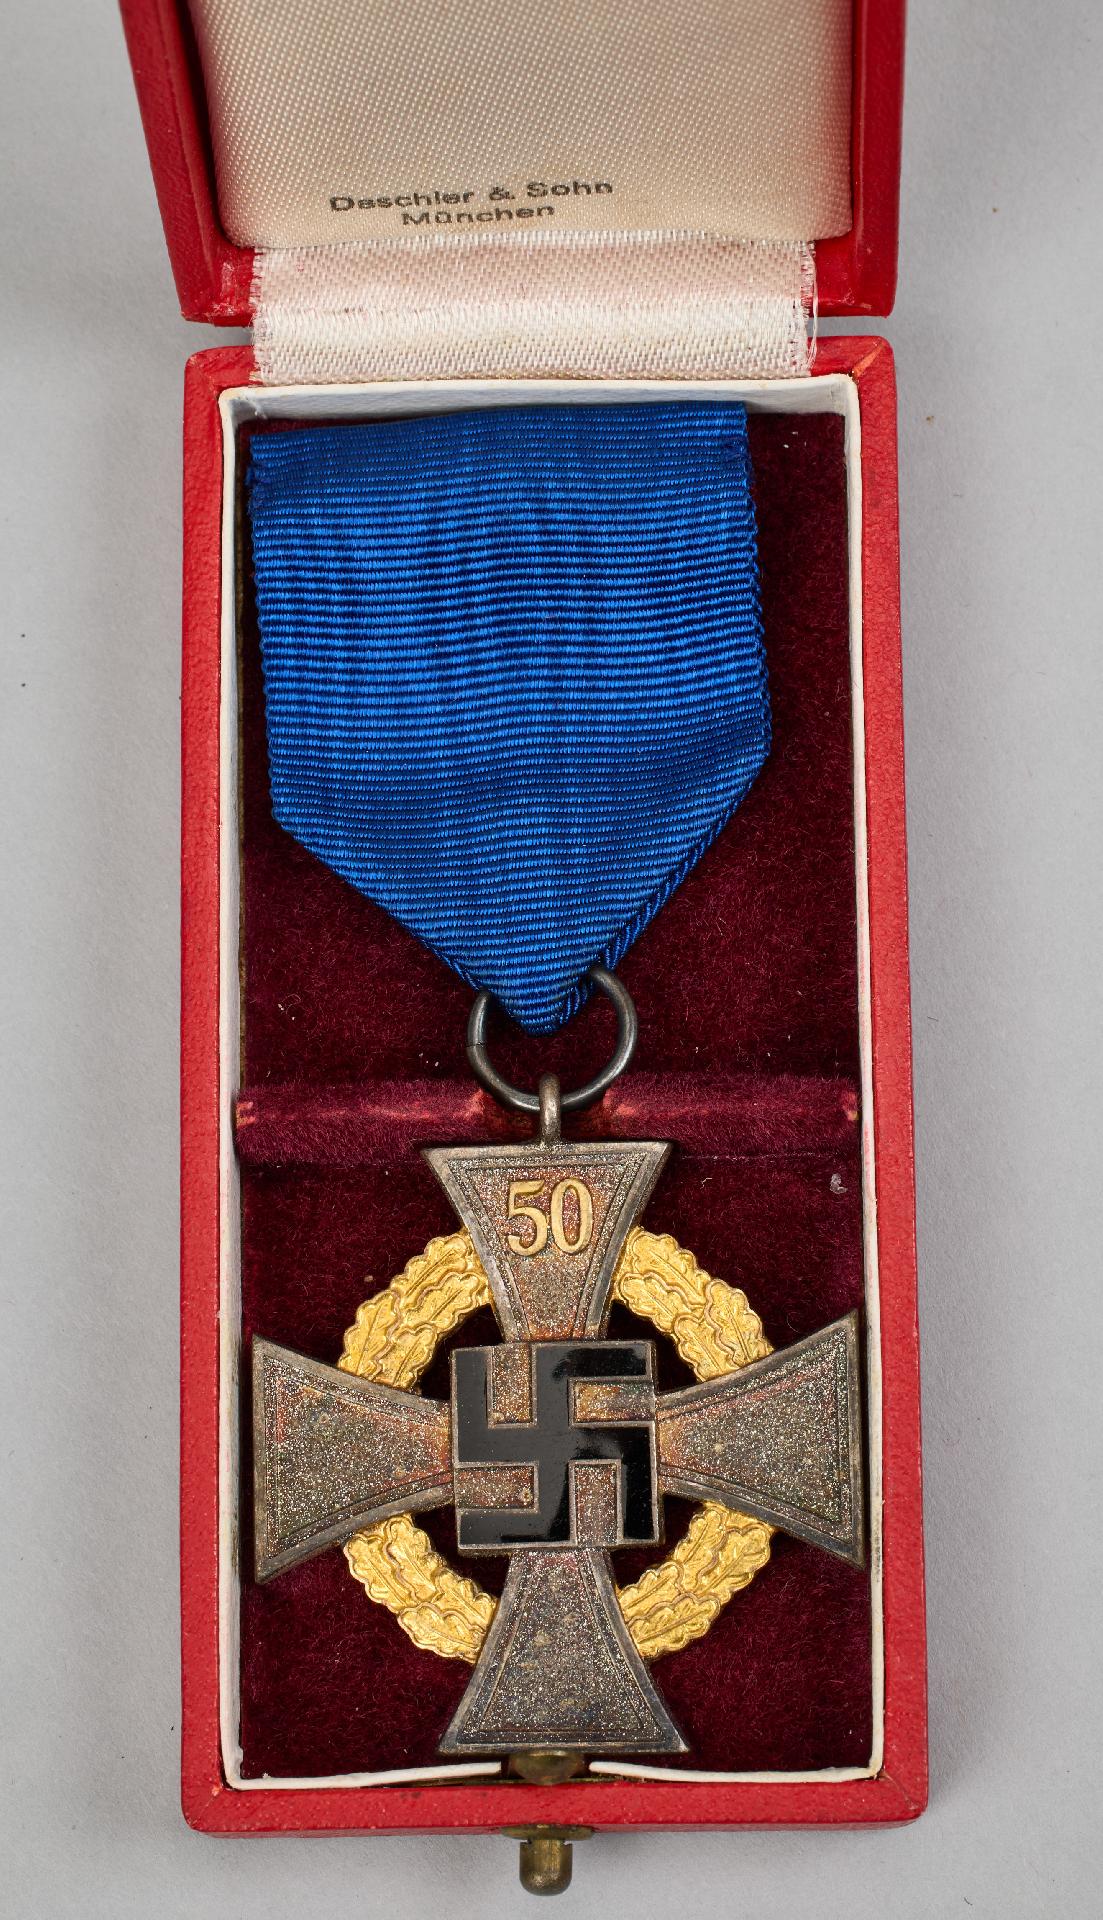 Civil Orders and Medals : Treuedienst -Ehrenzeichen - Sonderstufe mit der Zahl 50 - Image 3 of 5